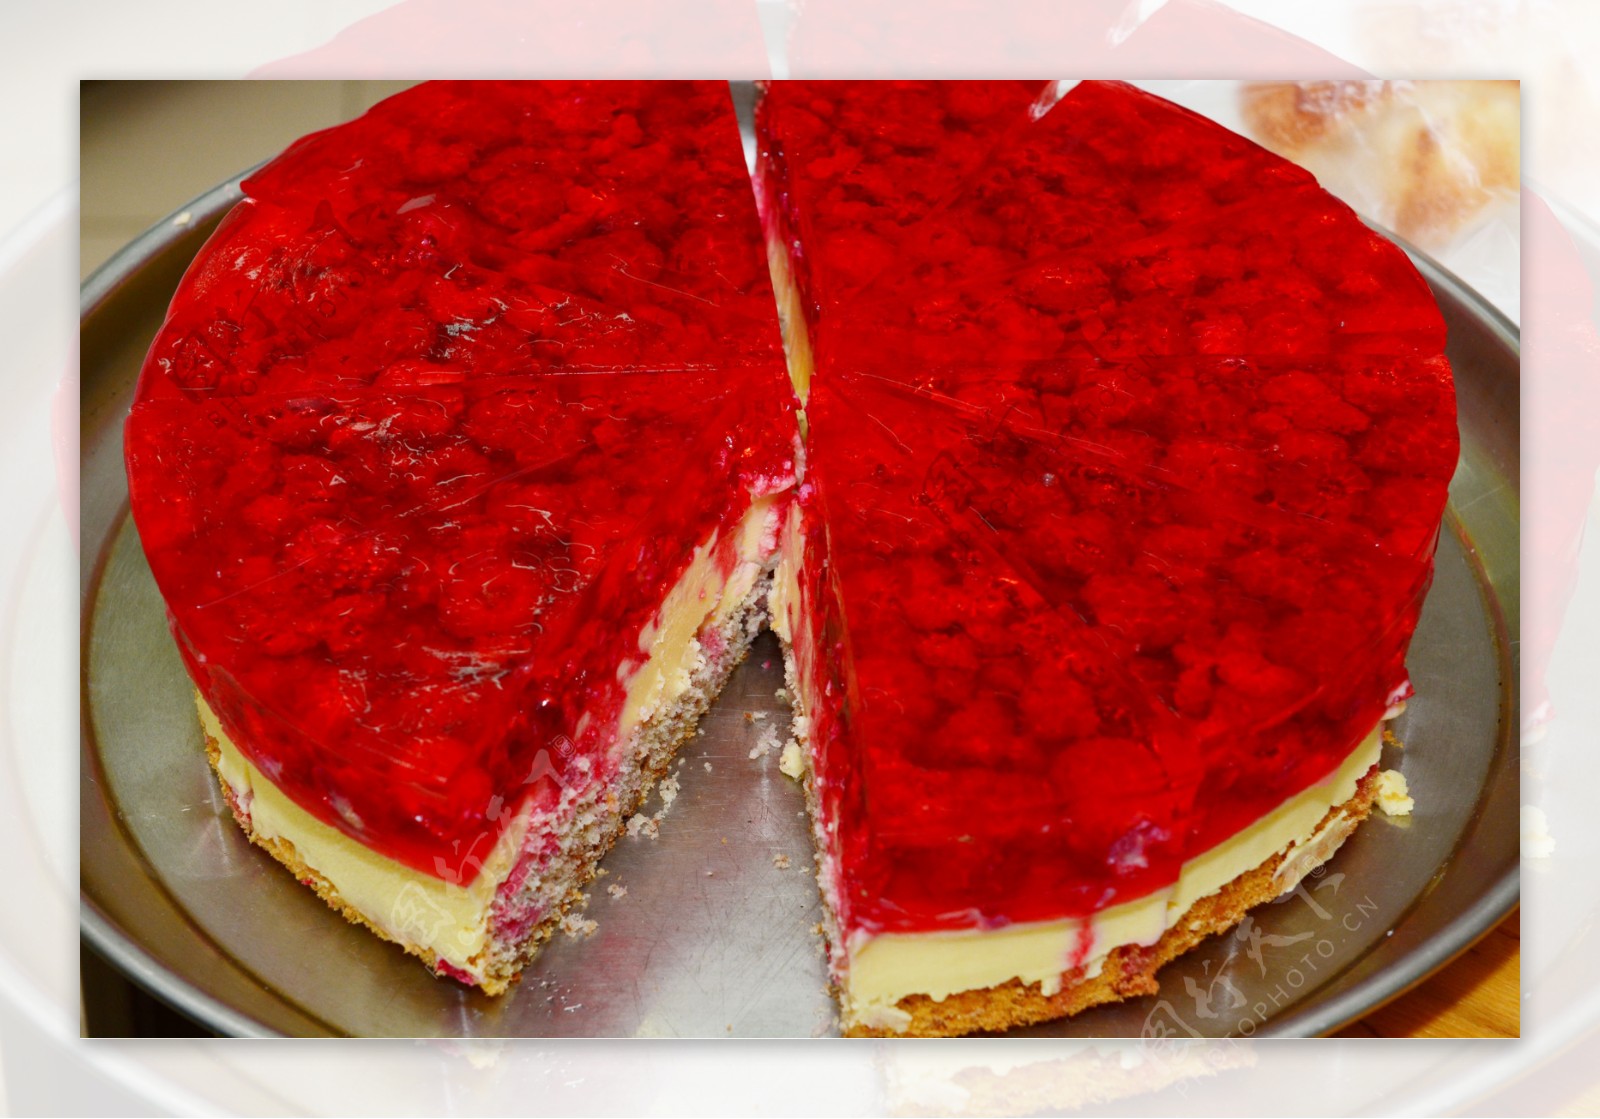 红色生日蛋糕